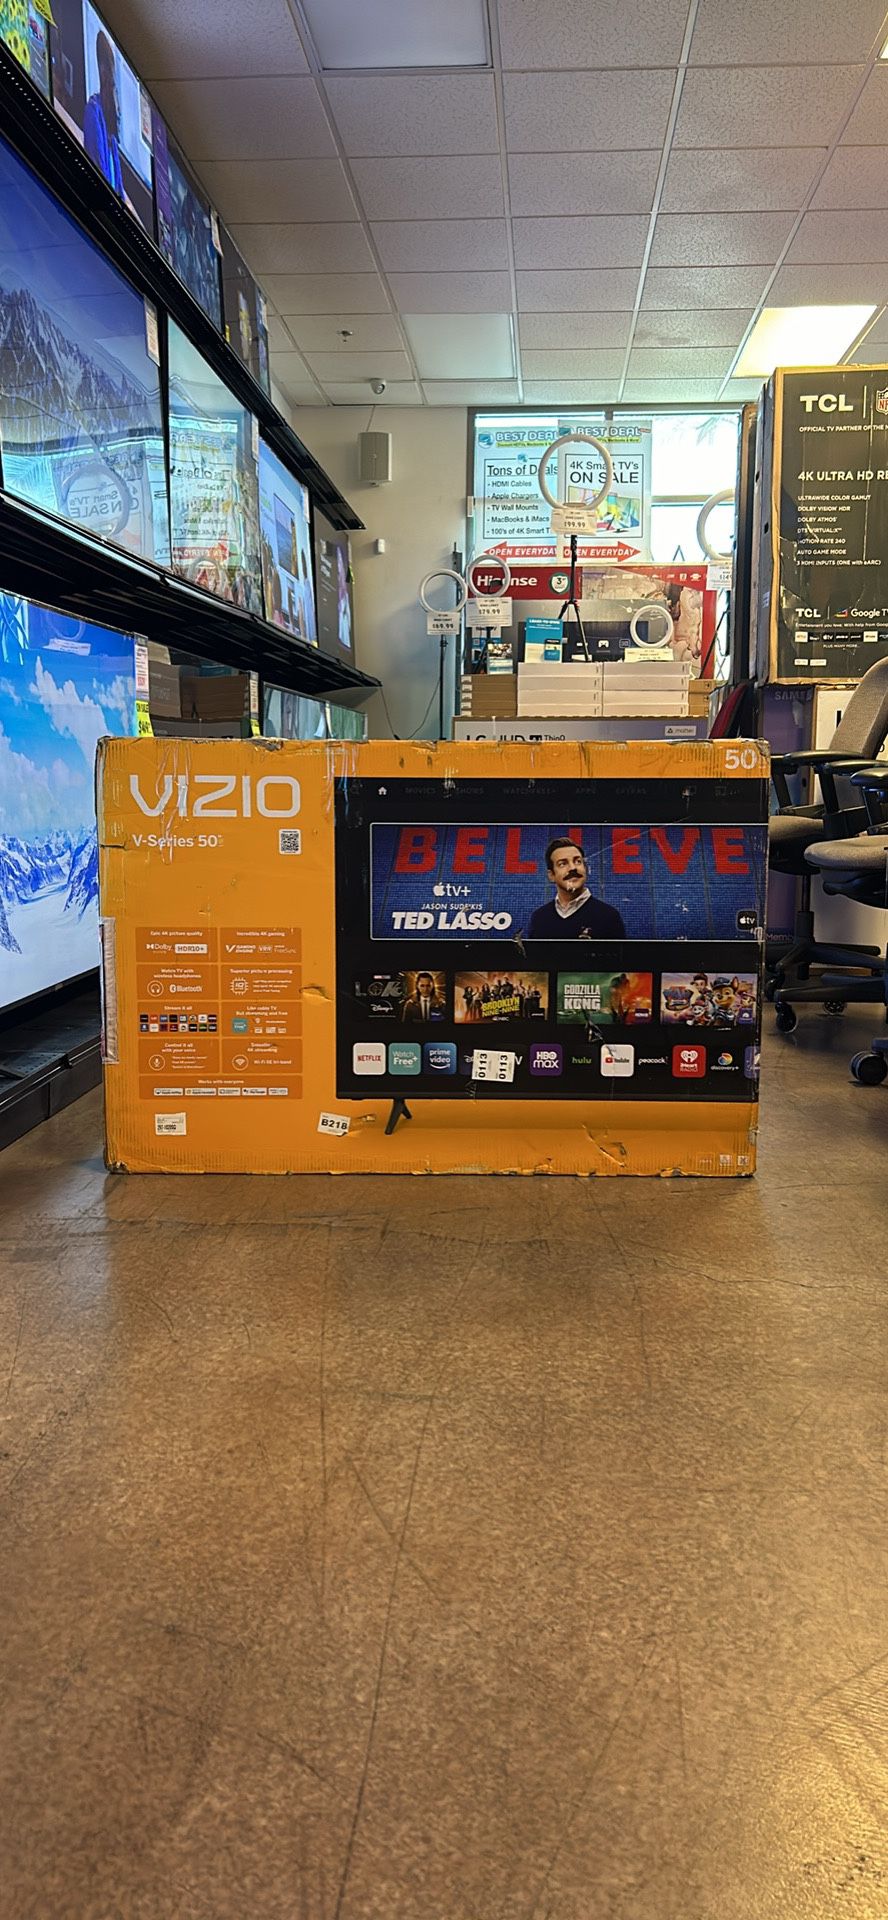 50” Vizio 4K UHD Smart TV